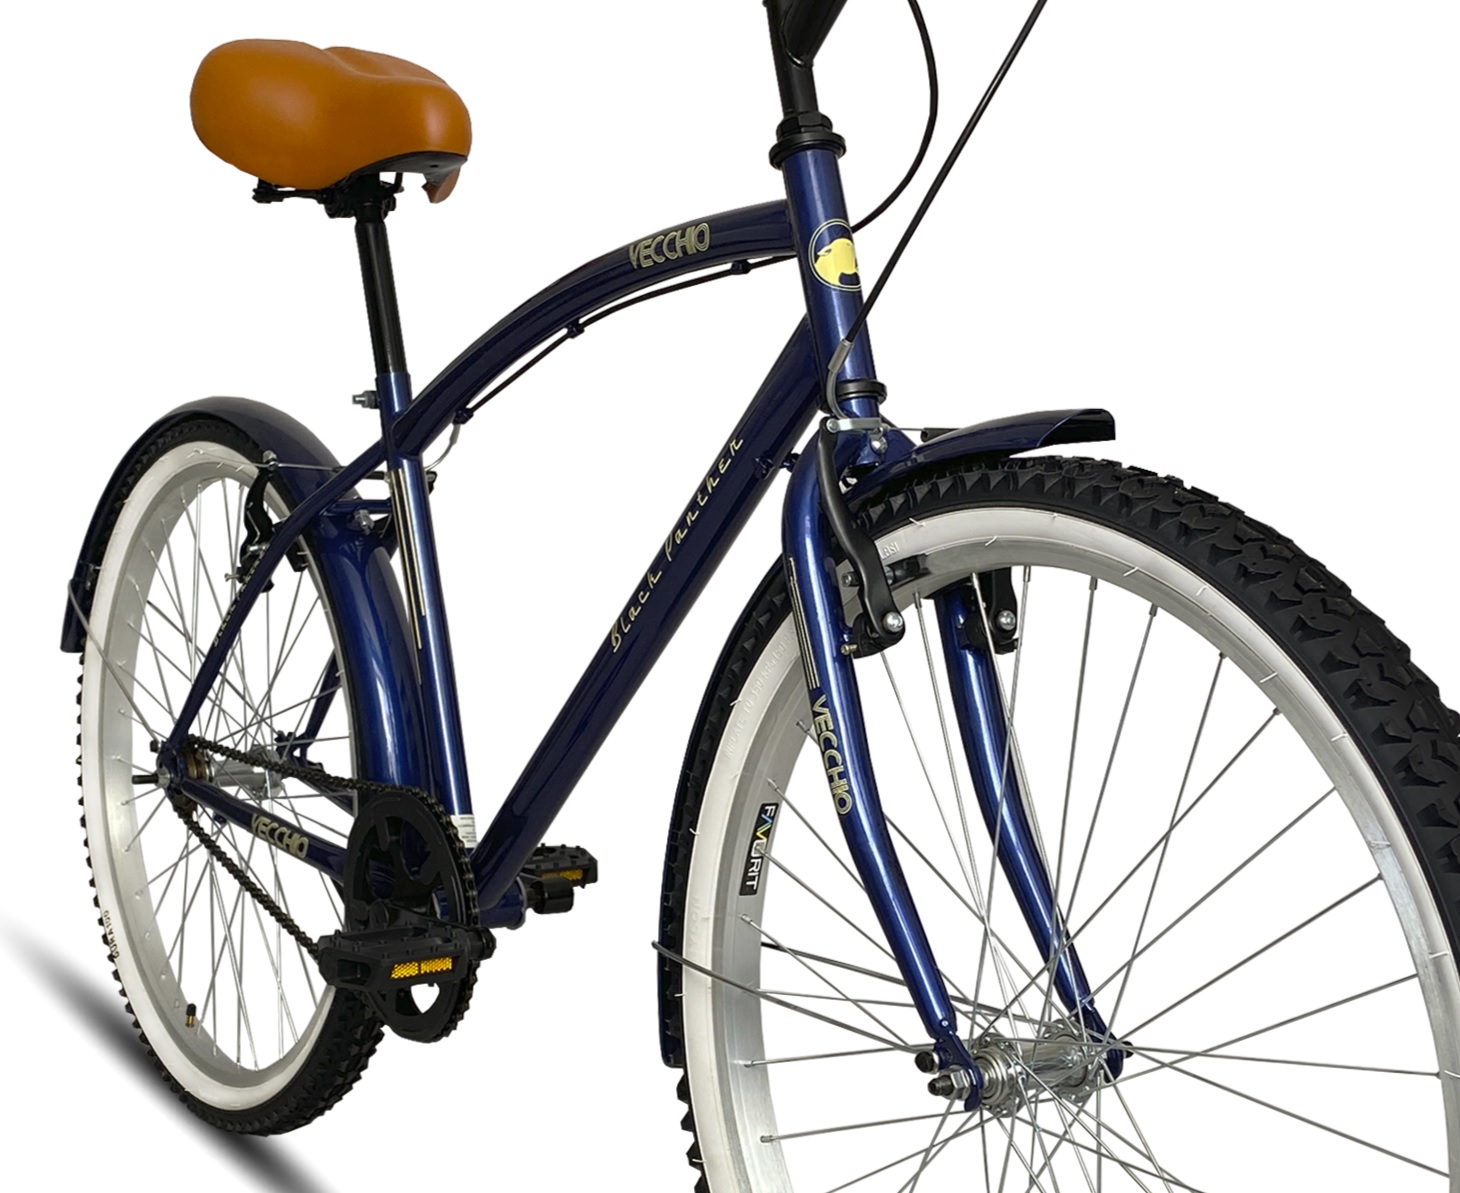 Bicicleta Vecchio Cruiser Urbana Caballero Rodada 26 Azul